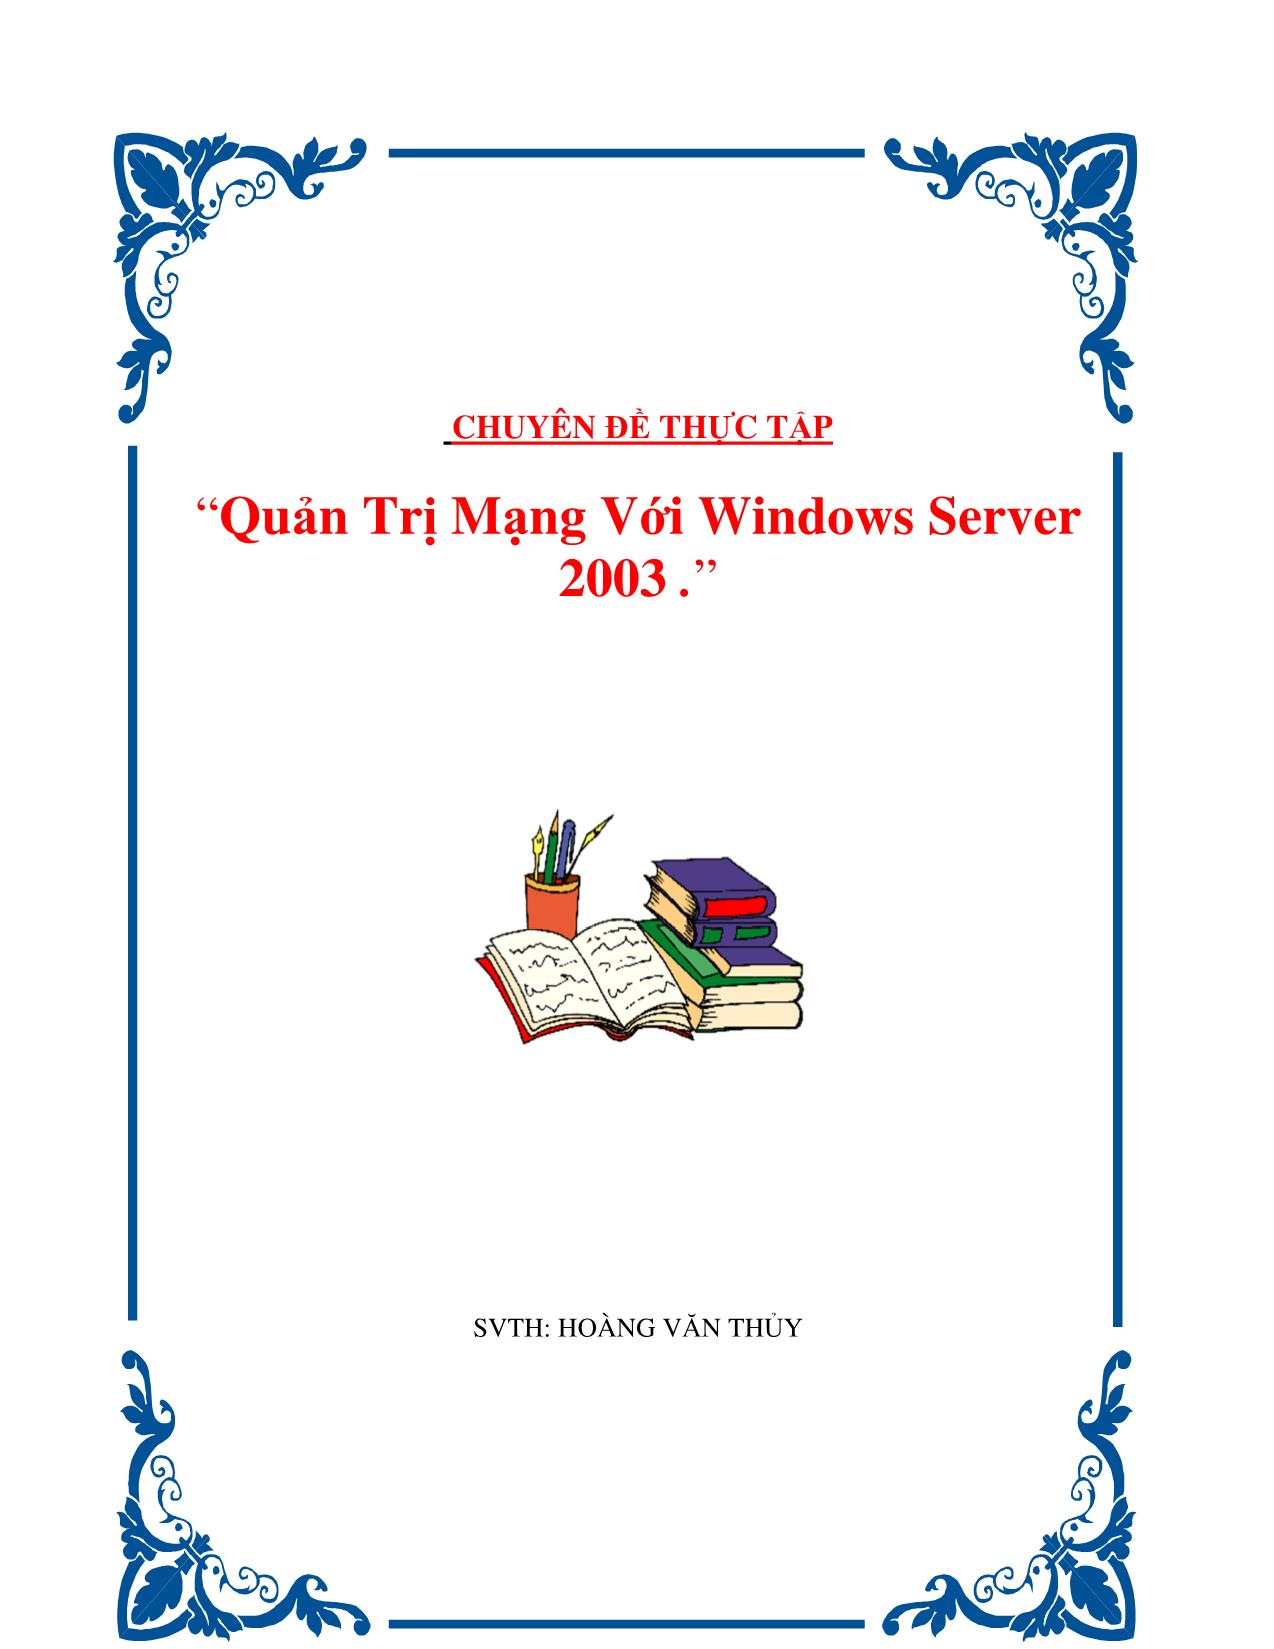 Chuyên đề Quản trị mạng với Windows Server 2003 trang 1